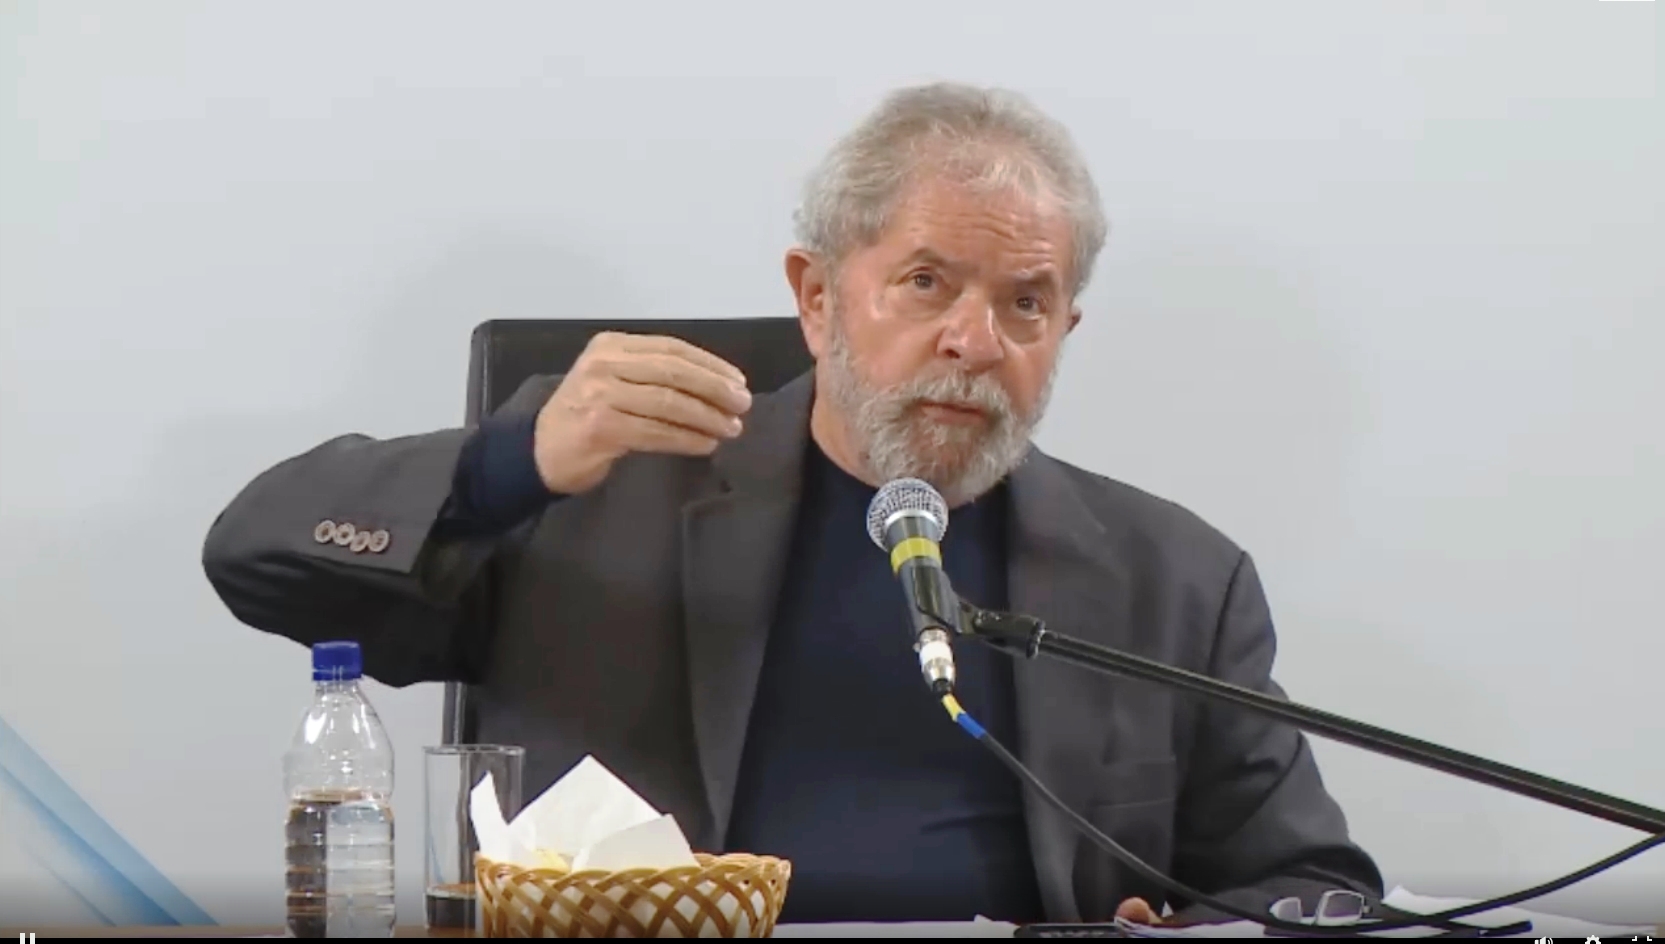 Reprodução/ Instituto Lula